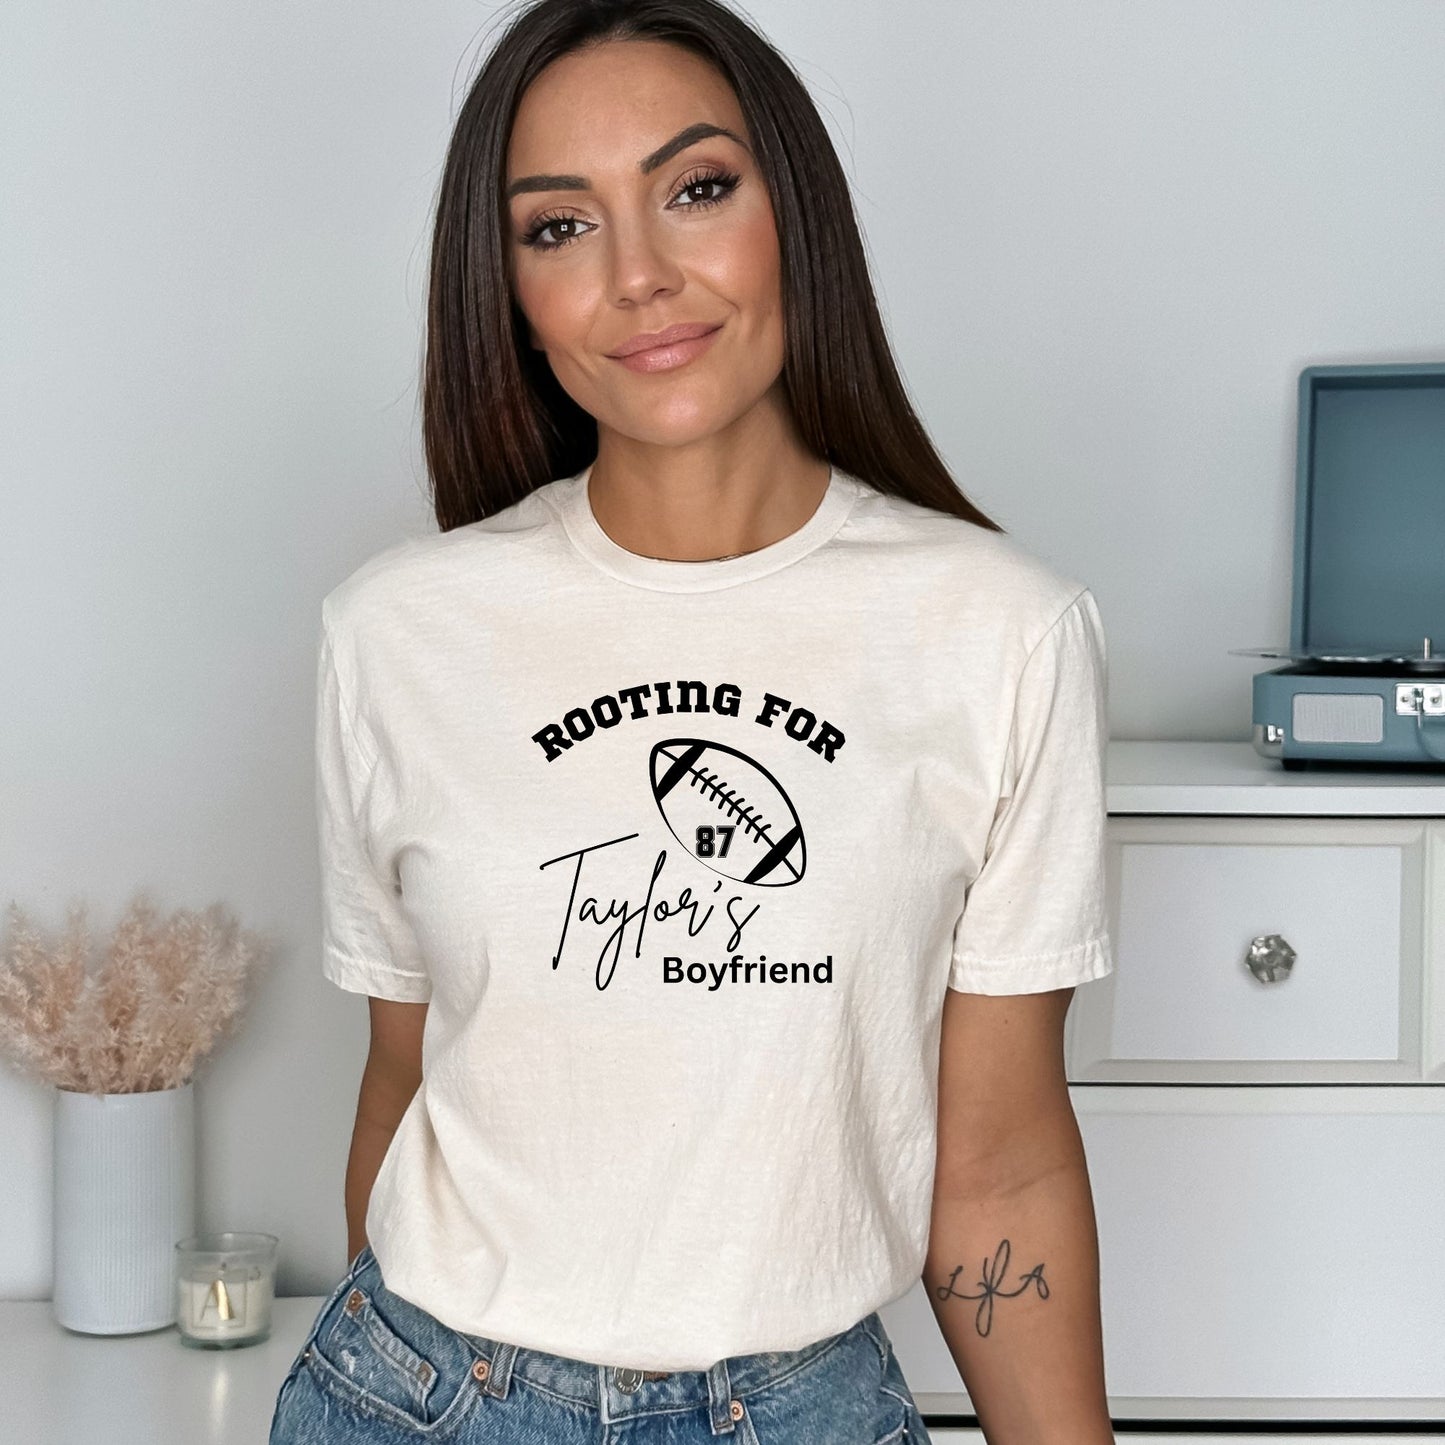 Rooting for Taylor's Boyfriend - Camiseta de fútbol unisex para adultos de estilo suave 